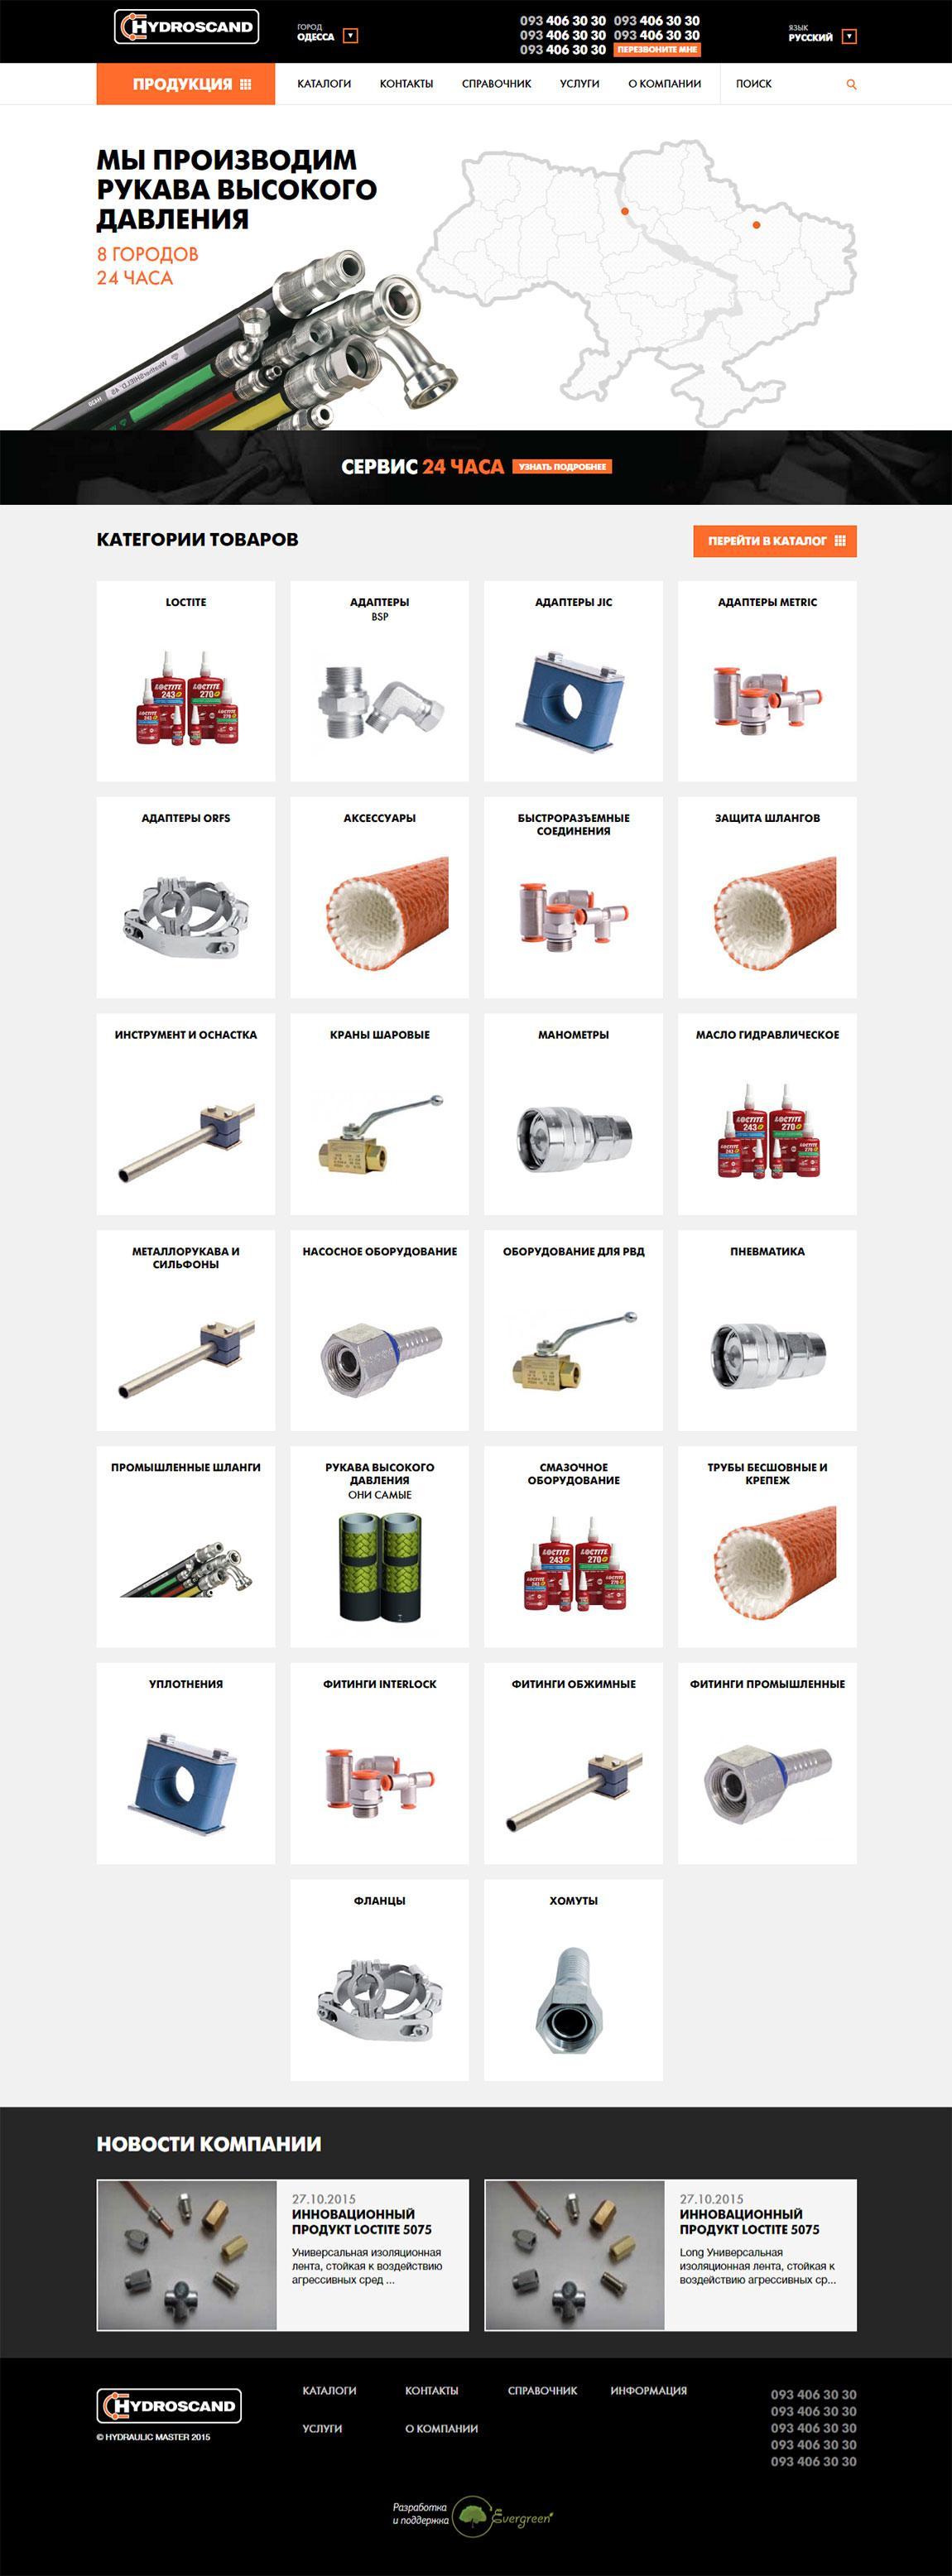 каталог гідравлічних частин, шлангів та іншого для механізмів та двигунів | проекти Evergreen 11